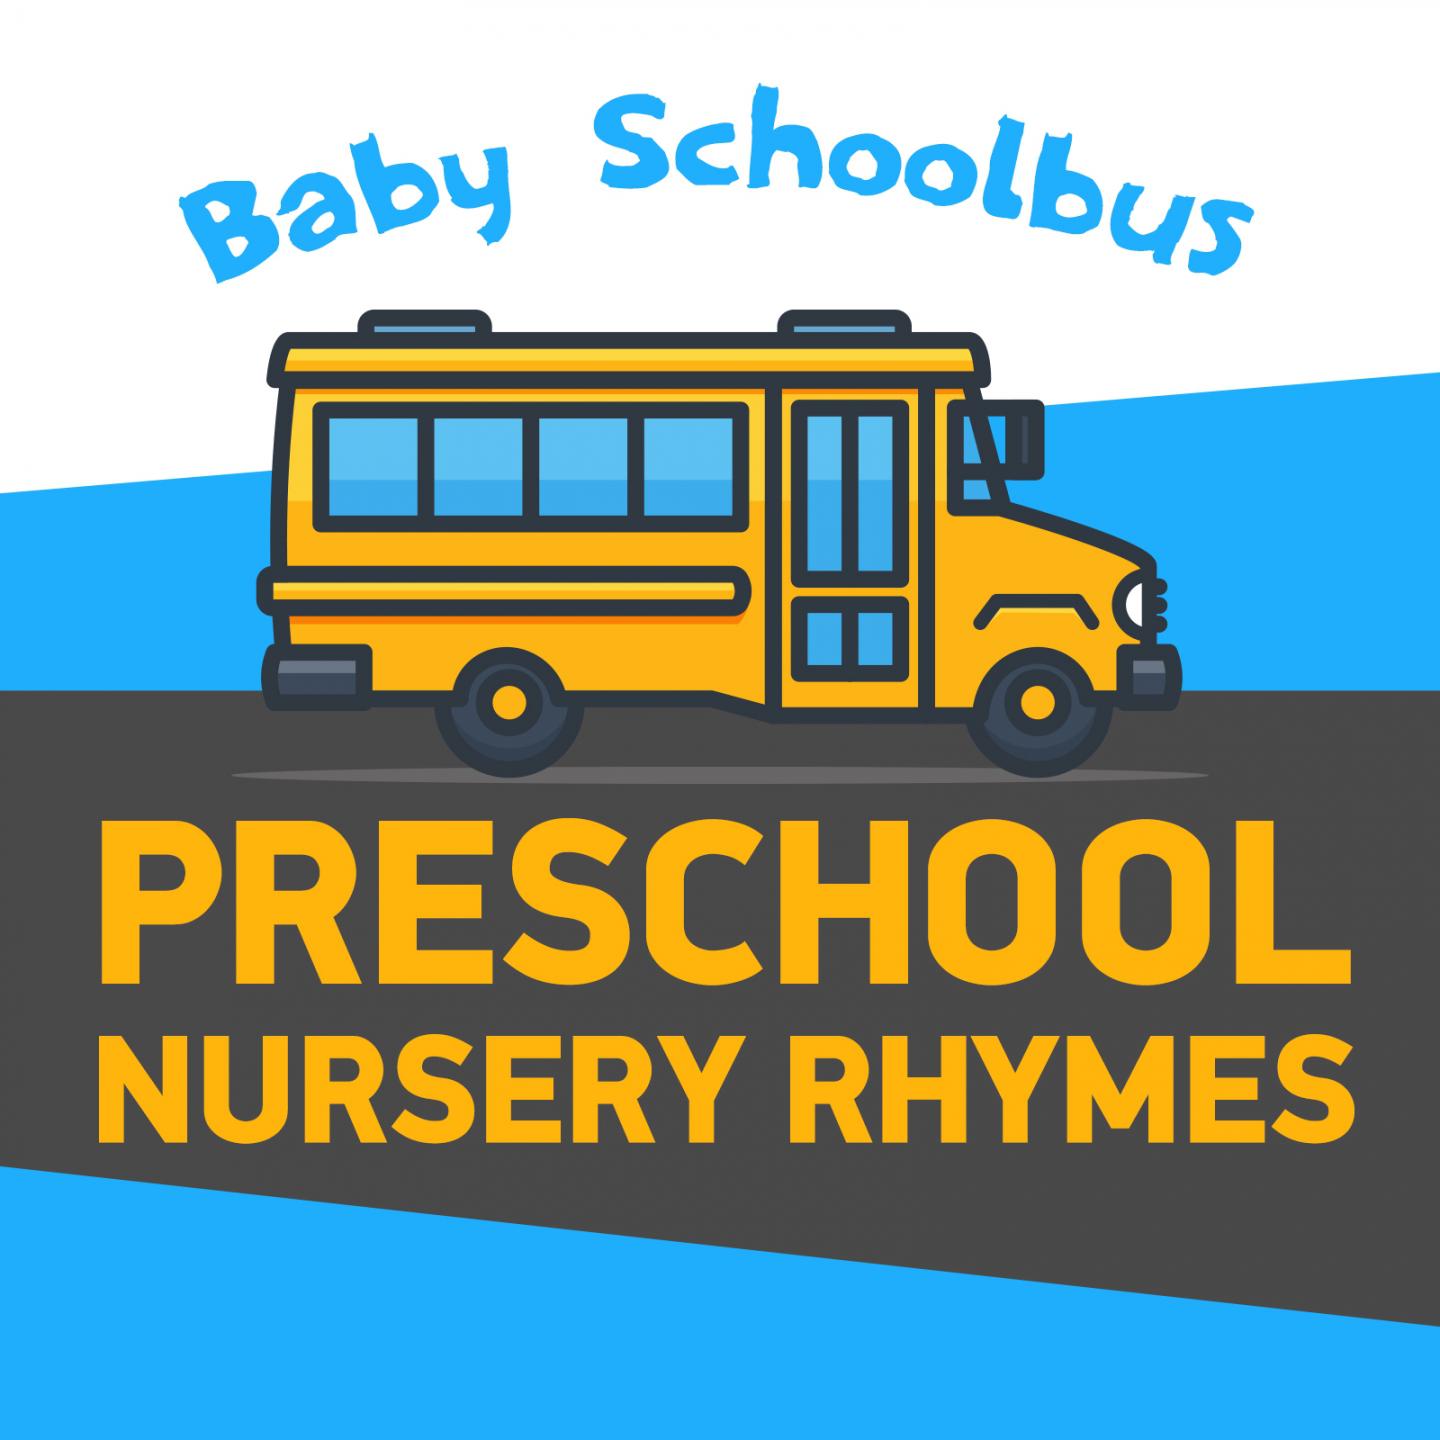 Baby Schoolbus / Preschool Nursery Rhymes